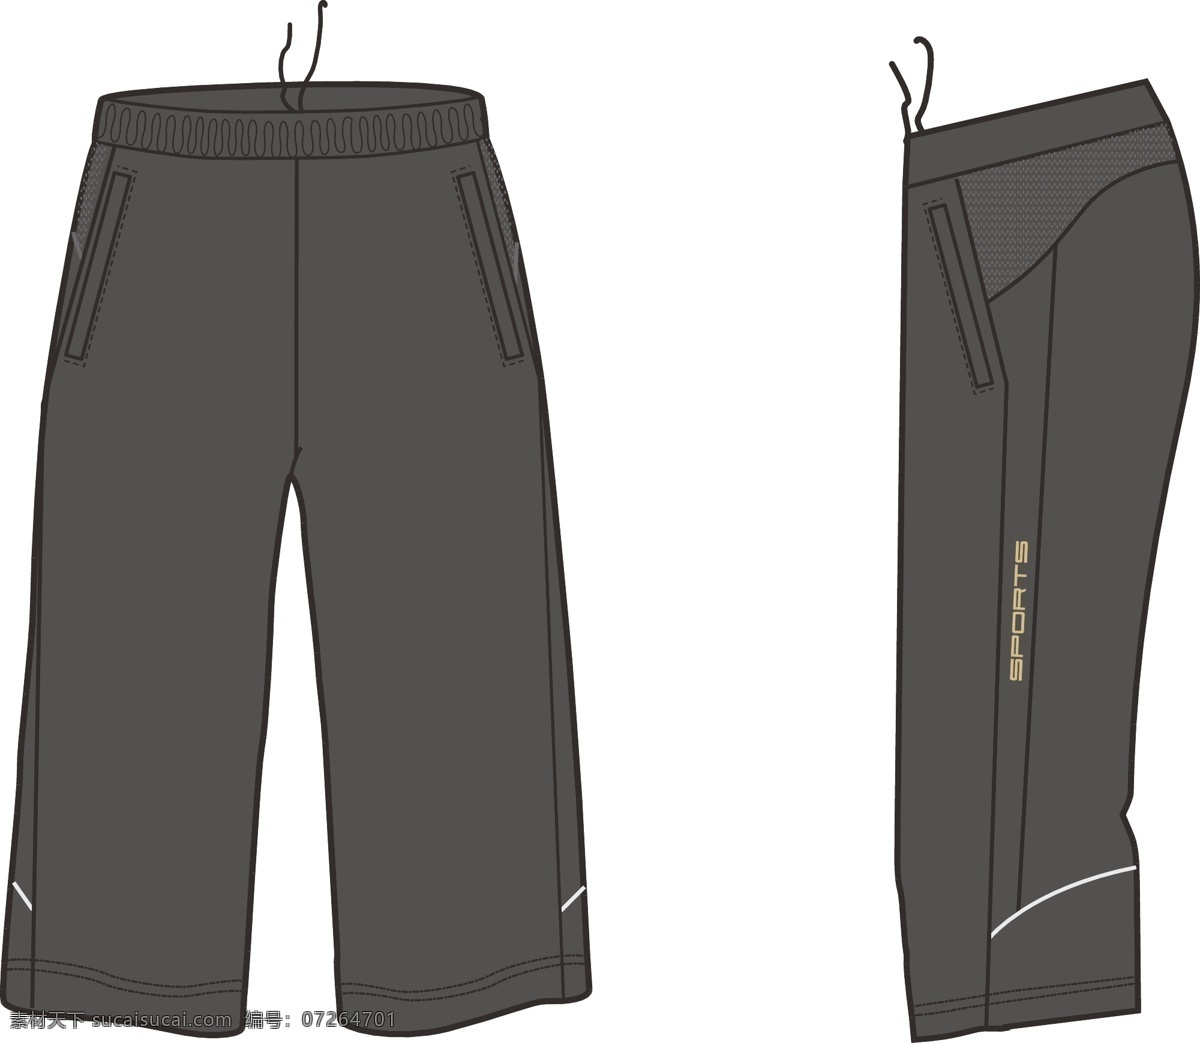 运动裤 裤子 深灰色 七分 时尚运动裤 设计作品 服装设计